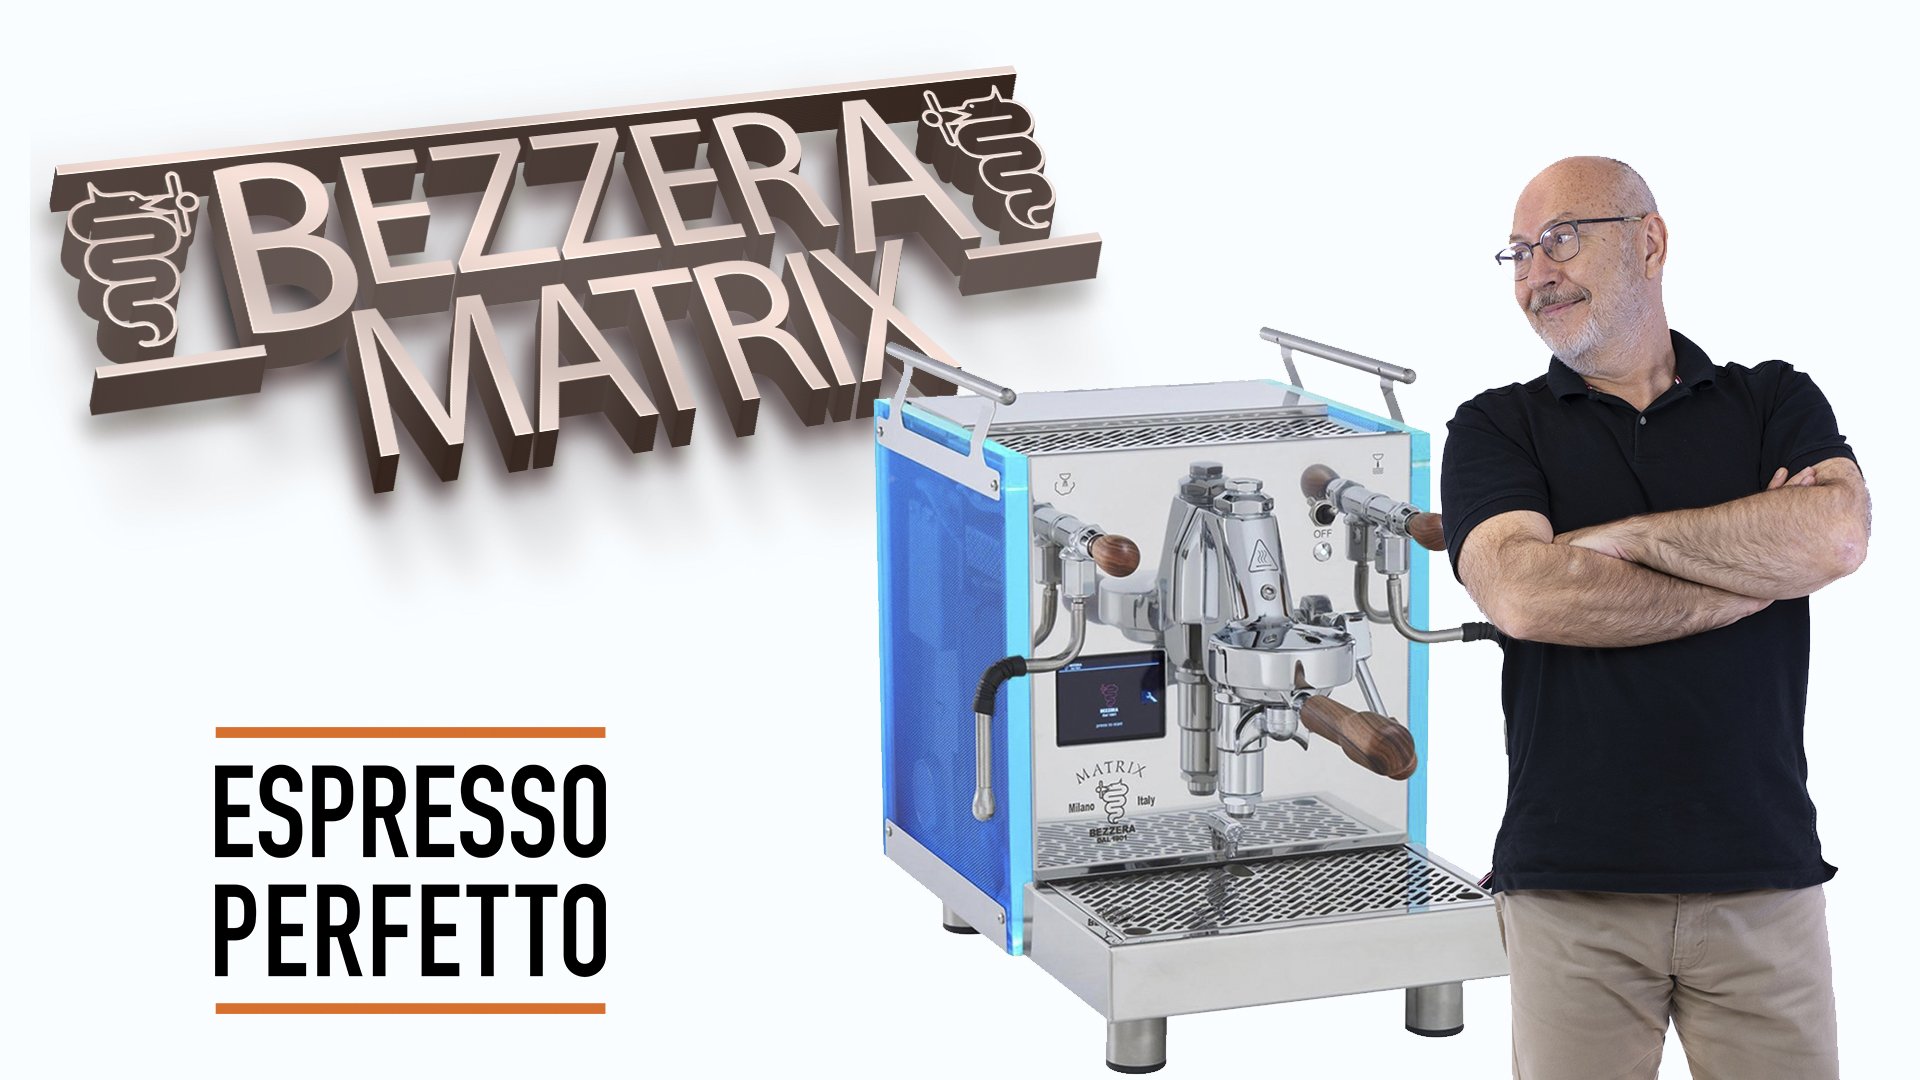 BEZZERA BZ10 Espresso Makinesi